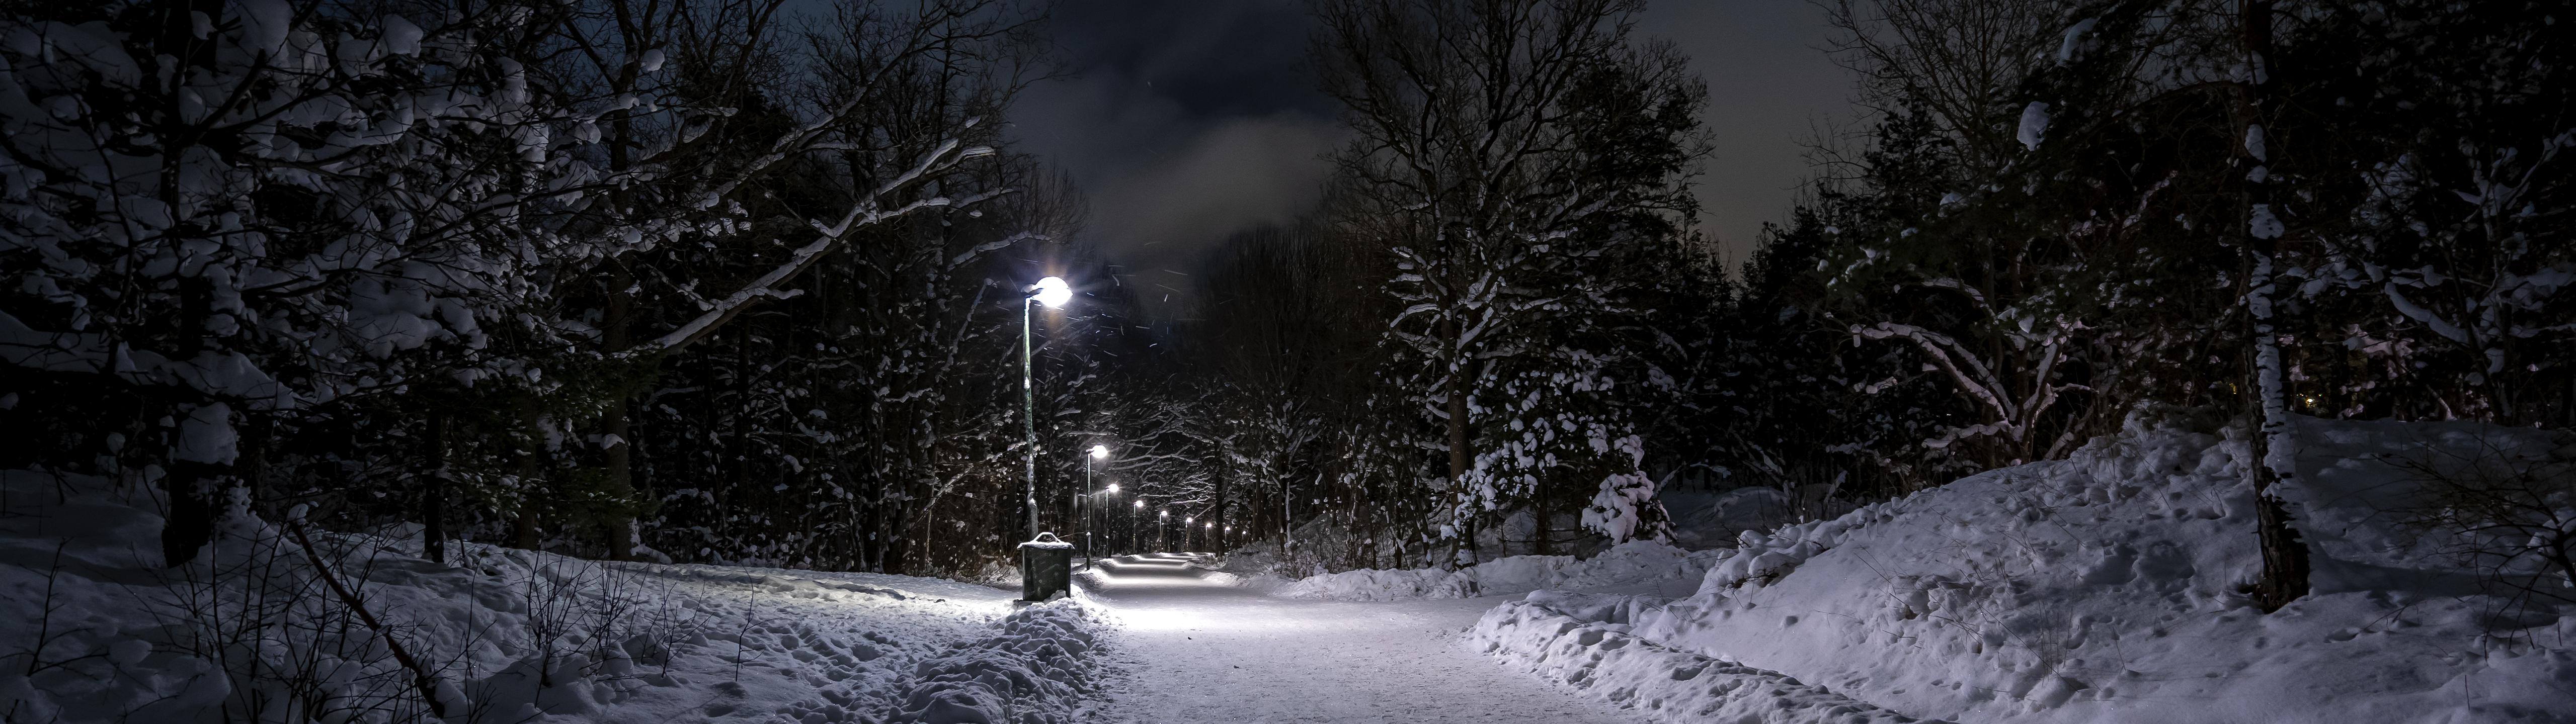 Hình nền mùa đông u tối: Khám phá những hình nền mùa đông với tông màu u tối và ấm áp để tạo cảm giác cozy và thư giãn trong tiết trời lạnh giá.